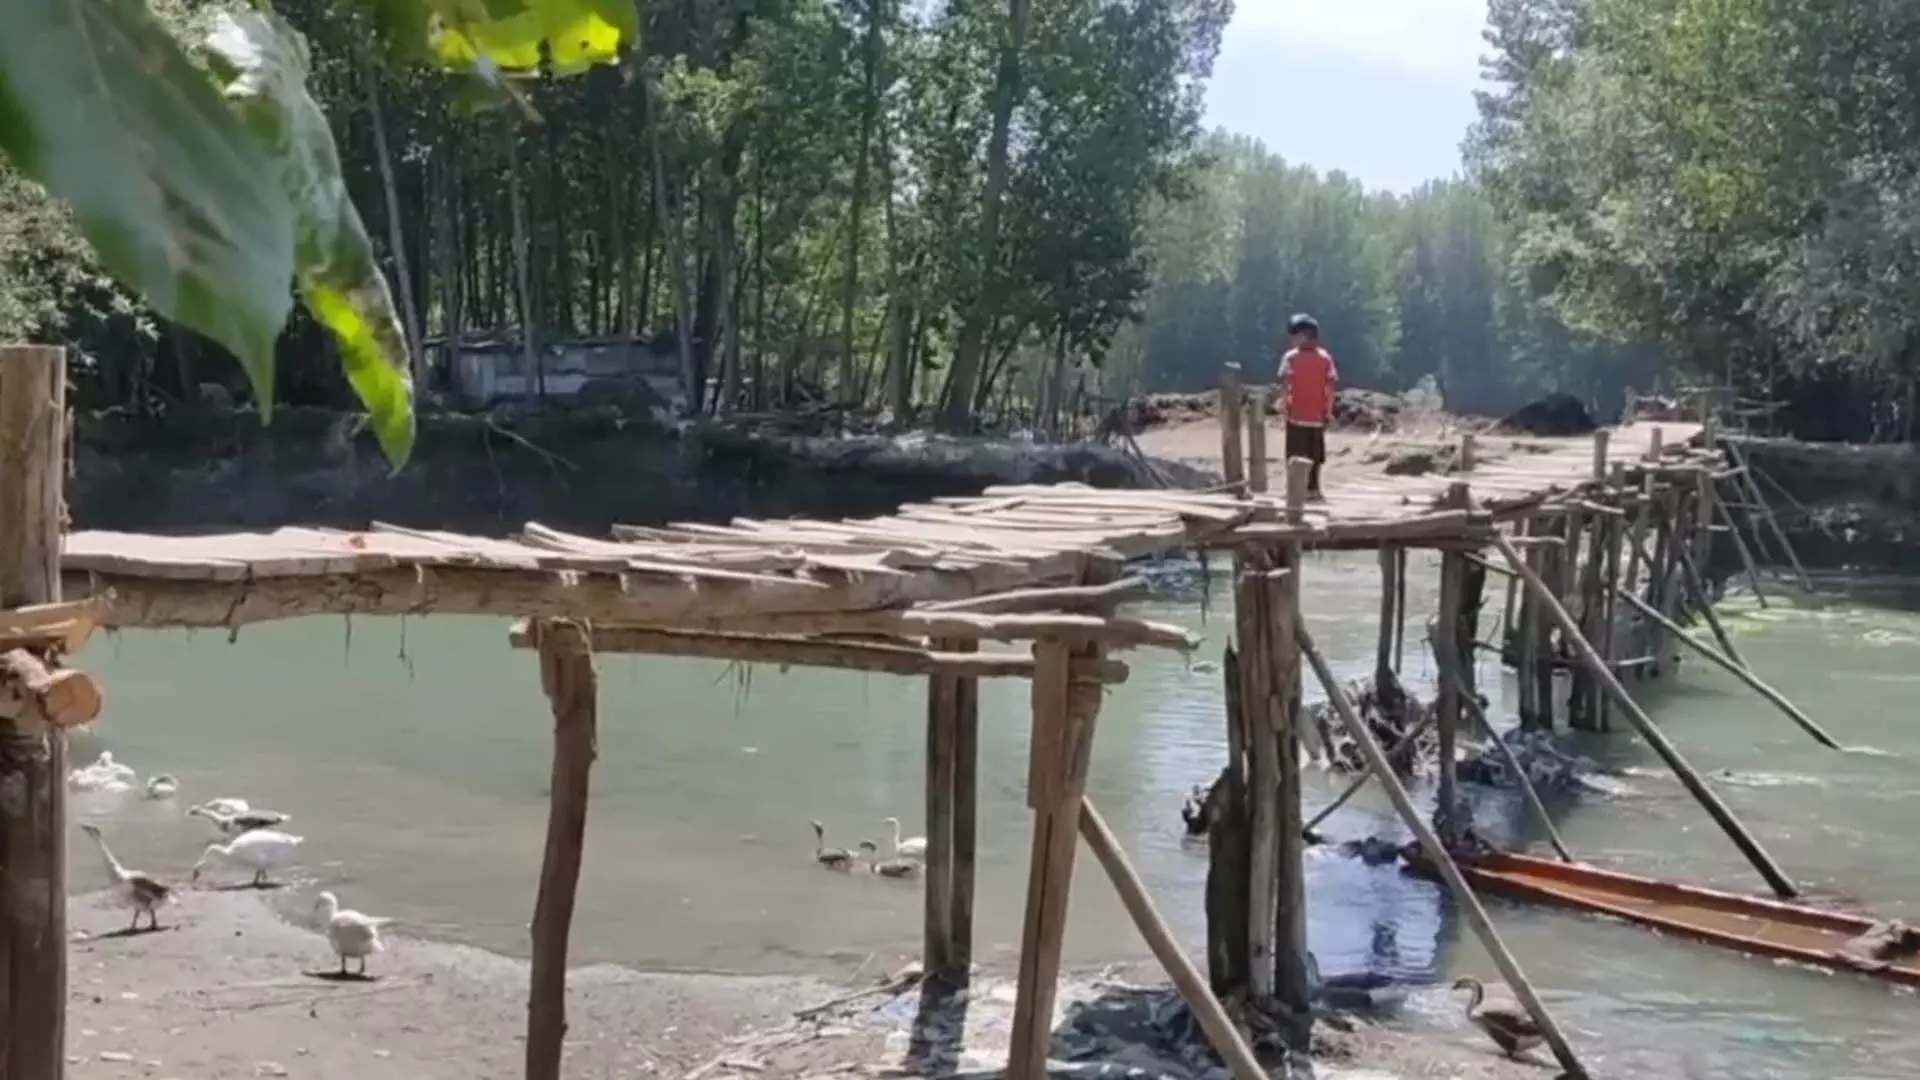 Kupwara area निवासियों के लिए अस्थायी लकड़ी का पुल खतरा बना हुआ